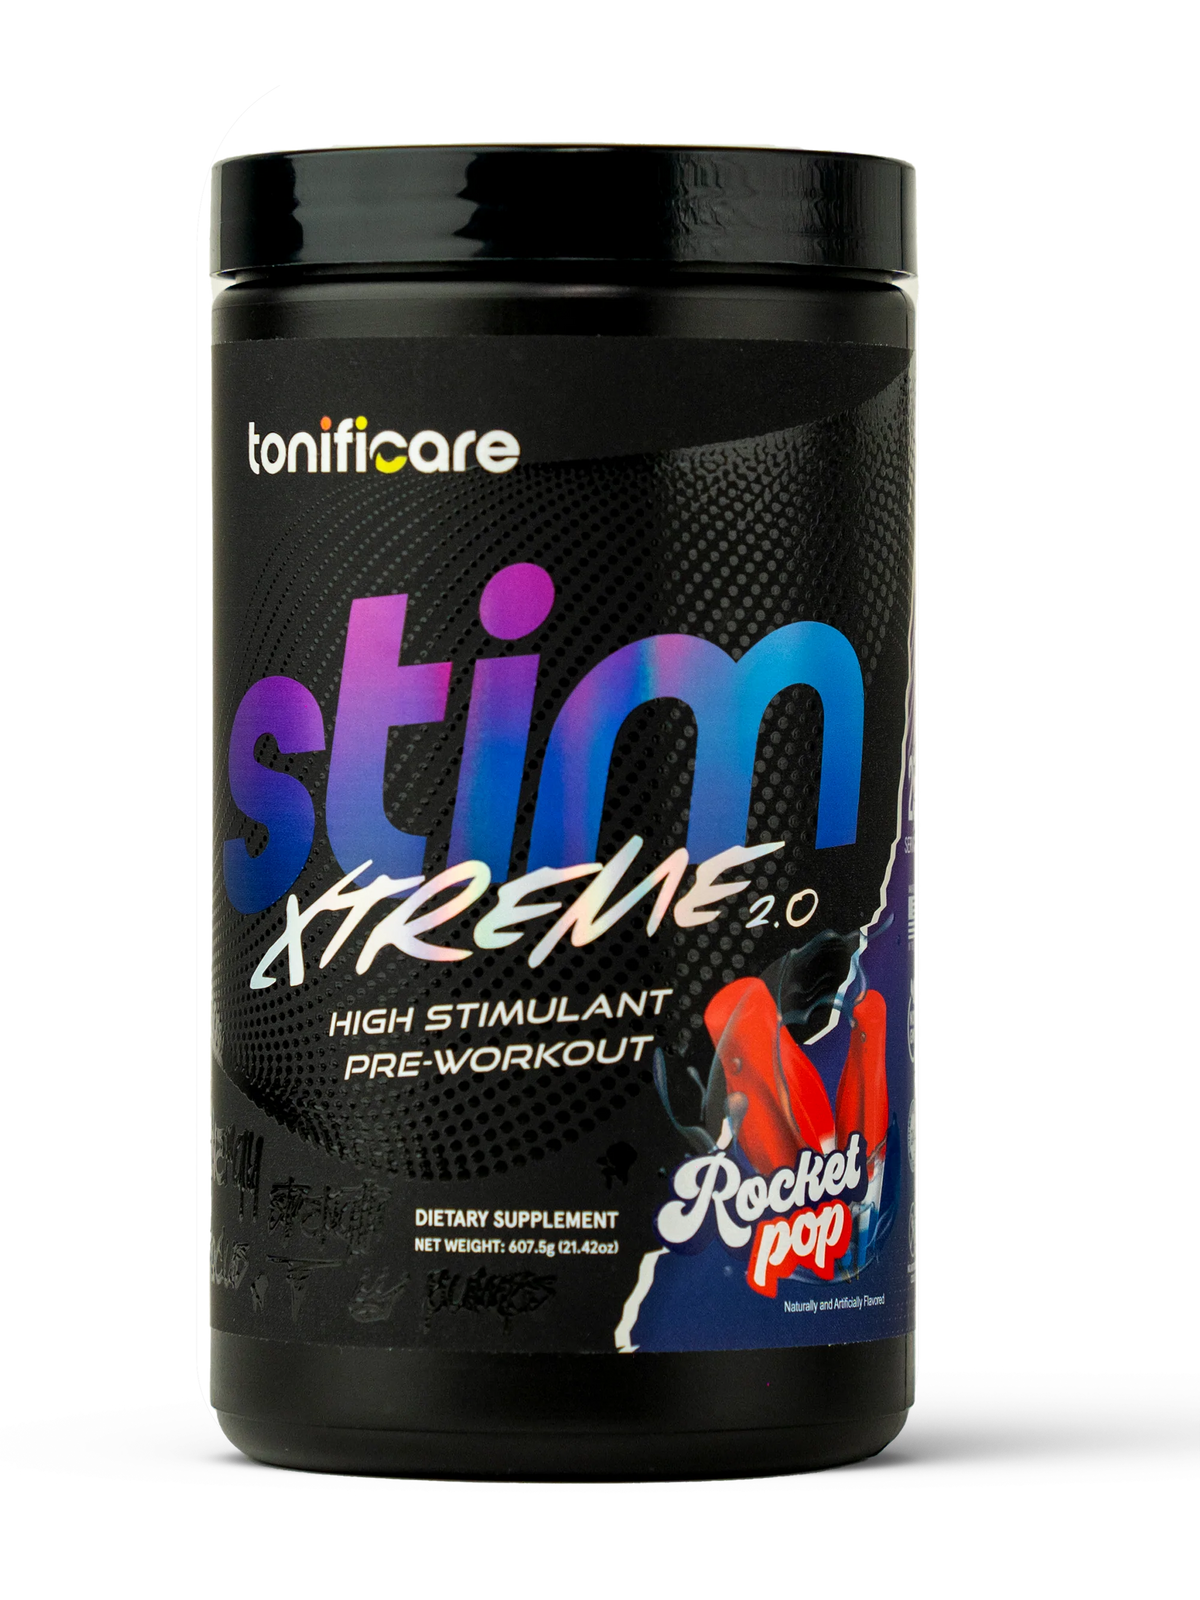 High Stimulant Pre-Workout Stim Xtreme 2.0 | Rocket Pop